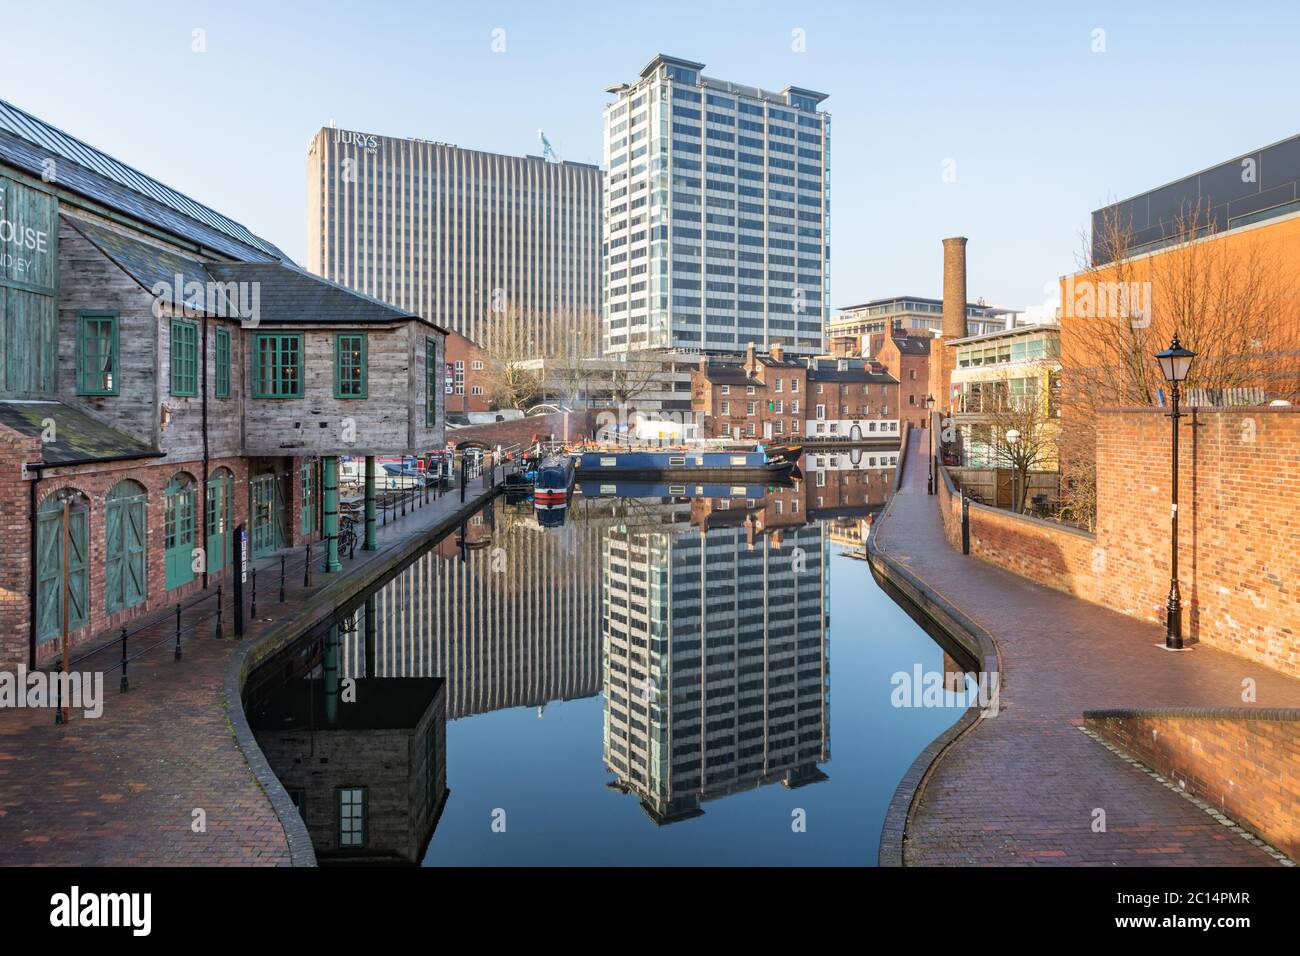 Birmingham, UK - 24/02/19: Bacino del canale di gas Street con noschemi ormeggiati. Gli edifici vecchi del canale e i moderni blocchi a torre si riflettono nell'acqua. Foto Stock